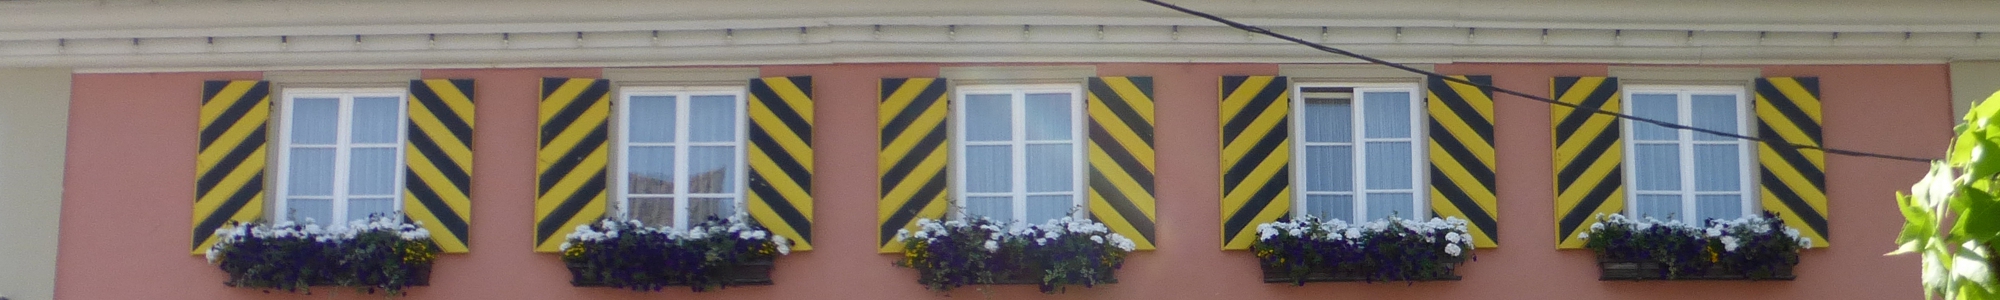 Rathaus-Fenster